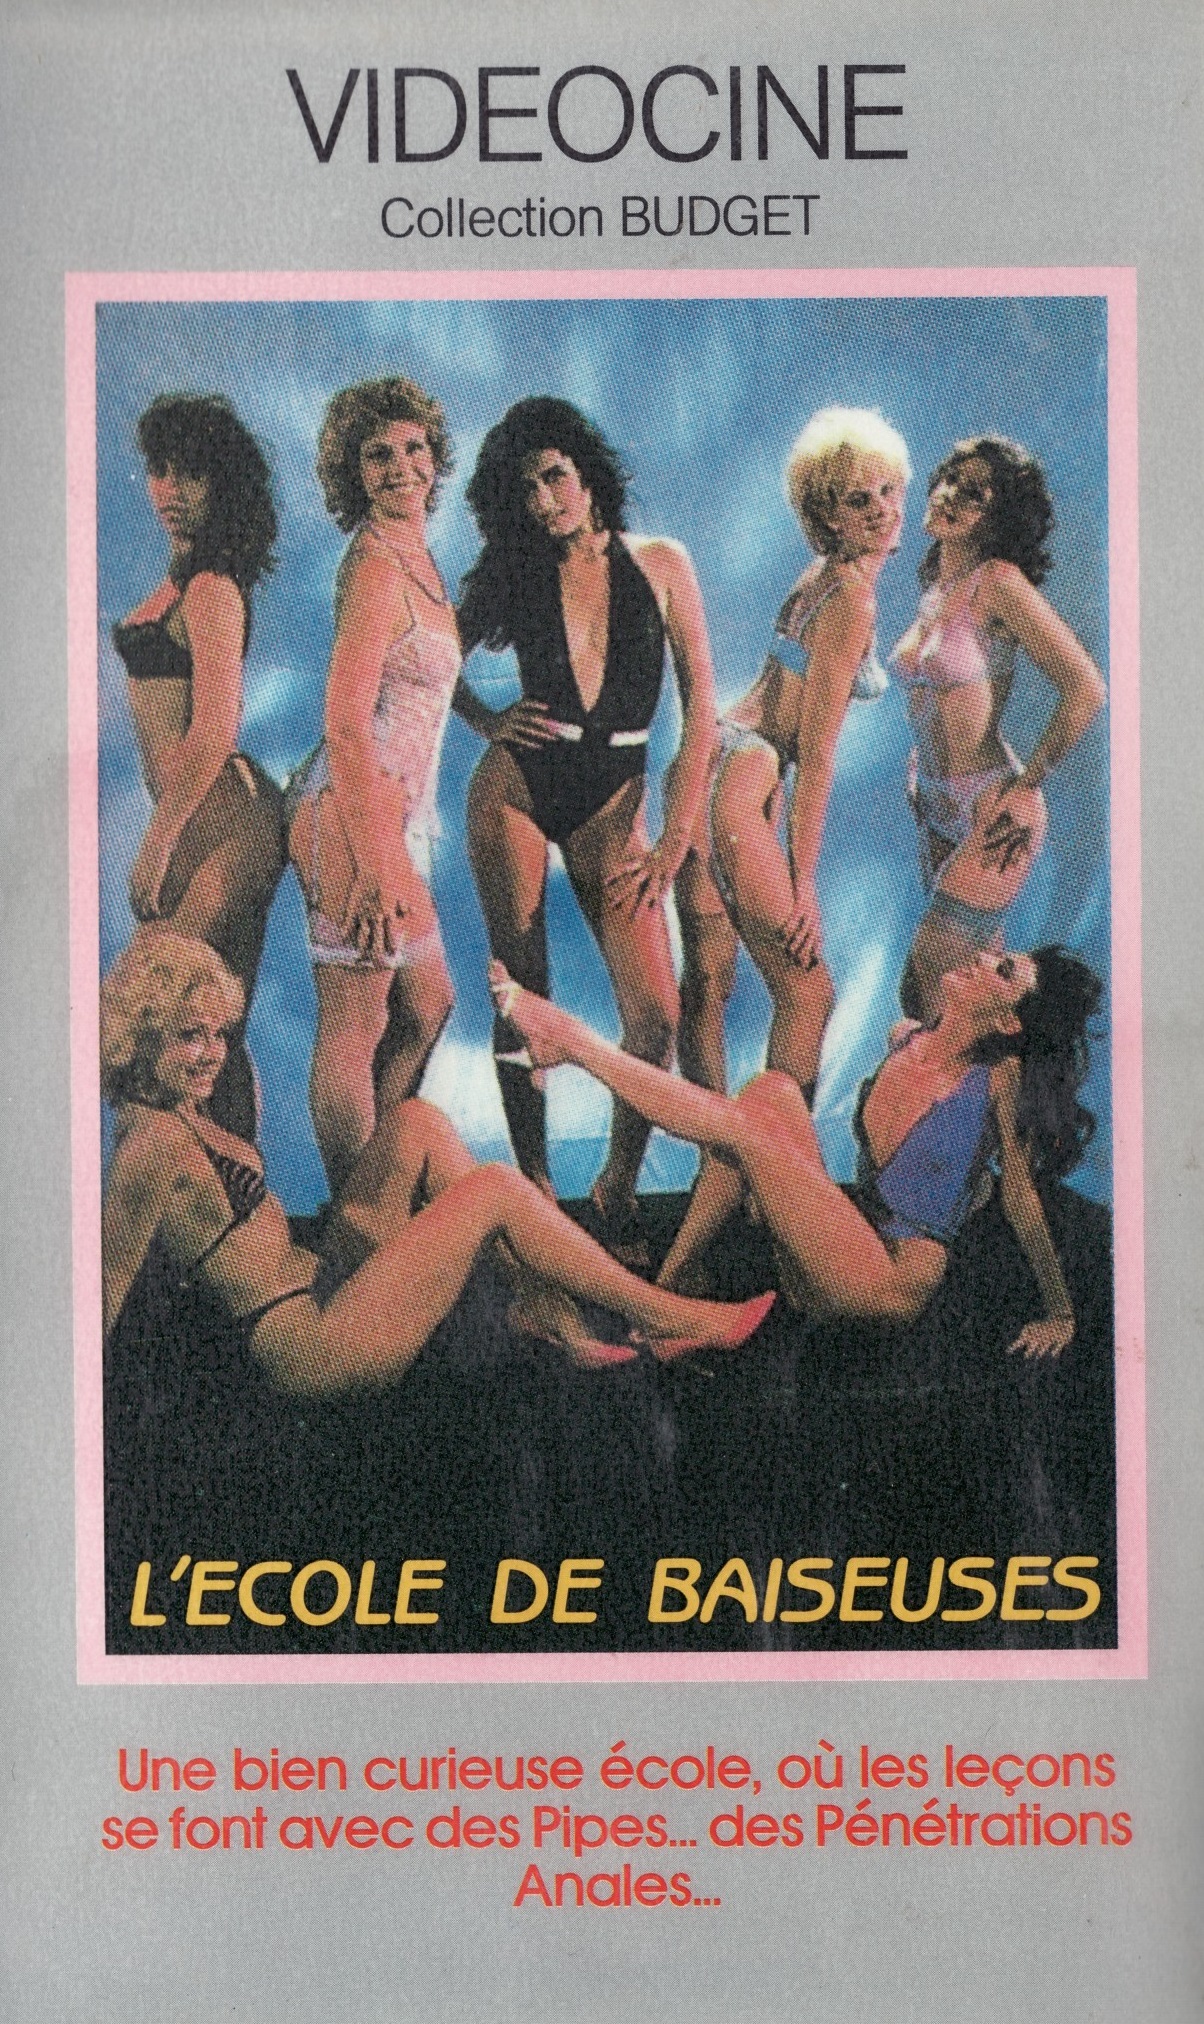 Lécole des baiseuses (1976)